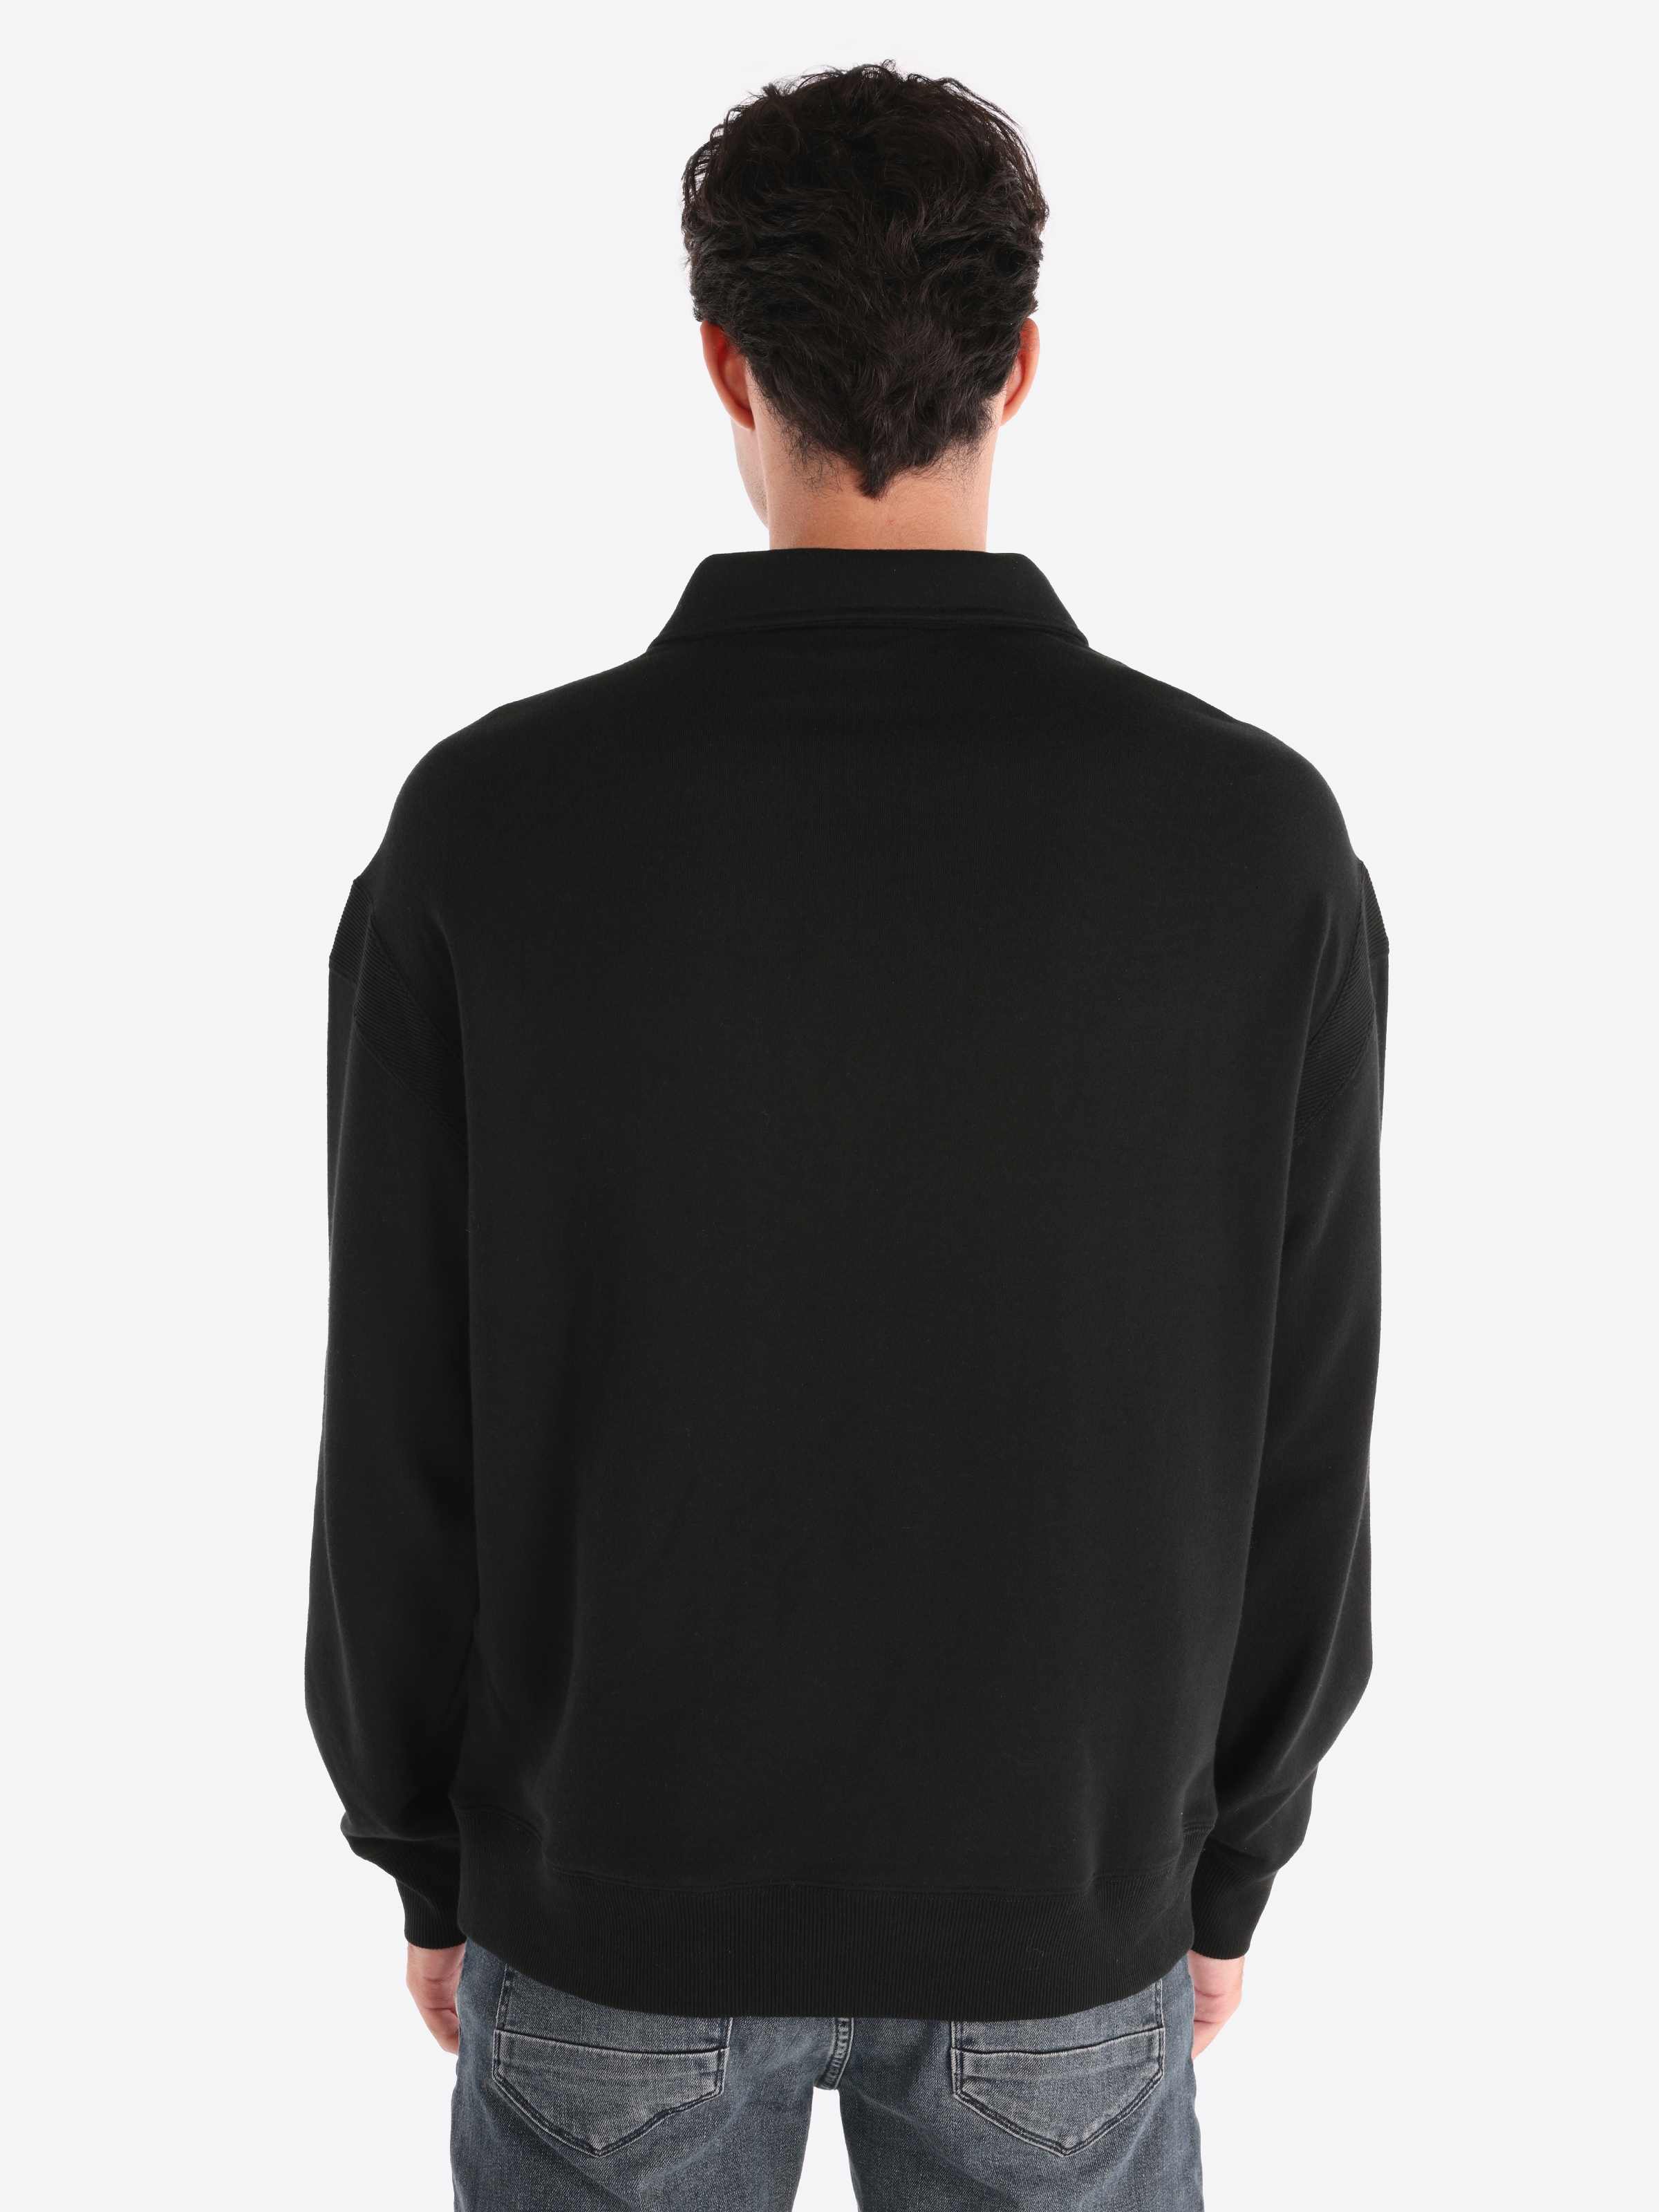 Afișați detalii pentru Tricou Cu Maneca Lunga De Barbati Negru Comfort Fit 